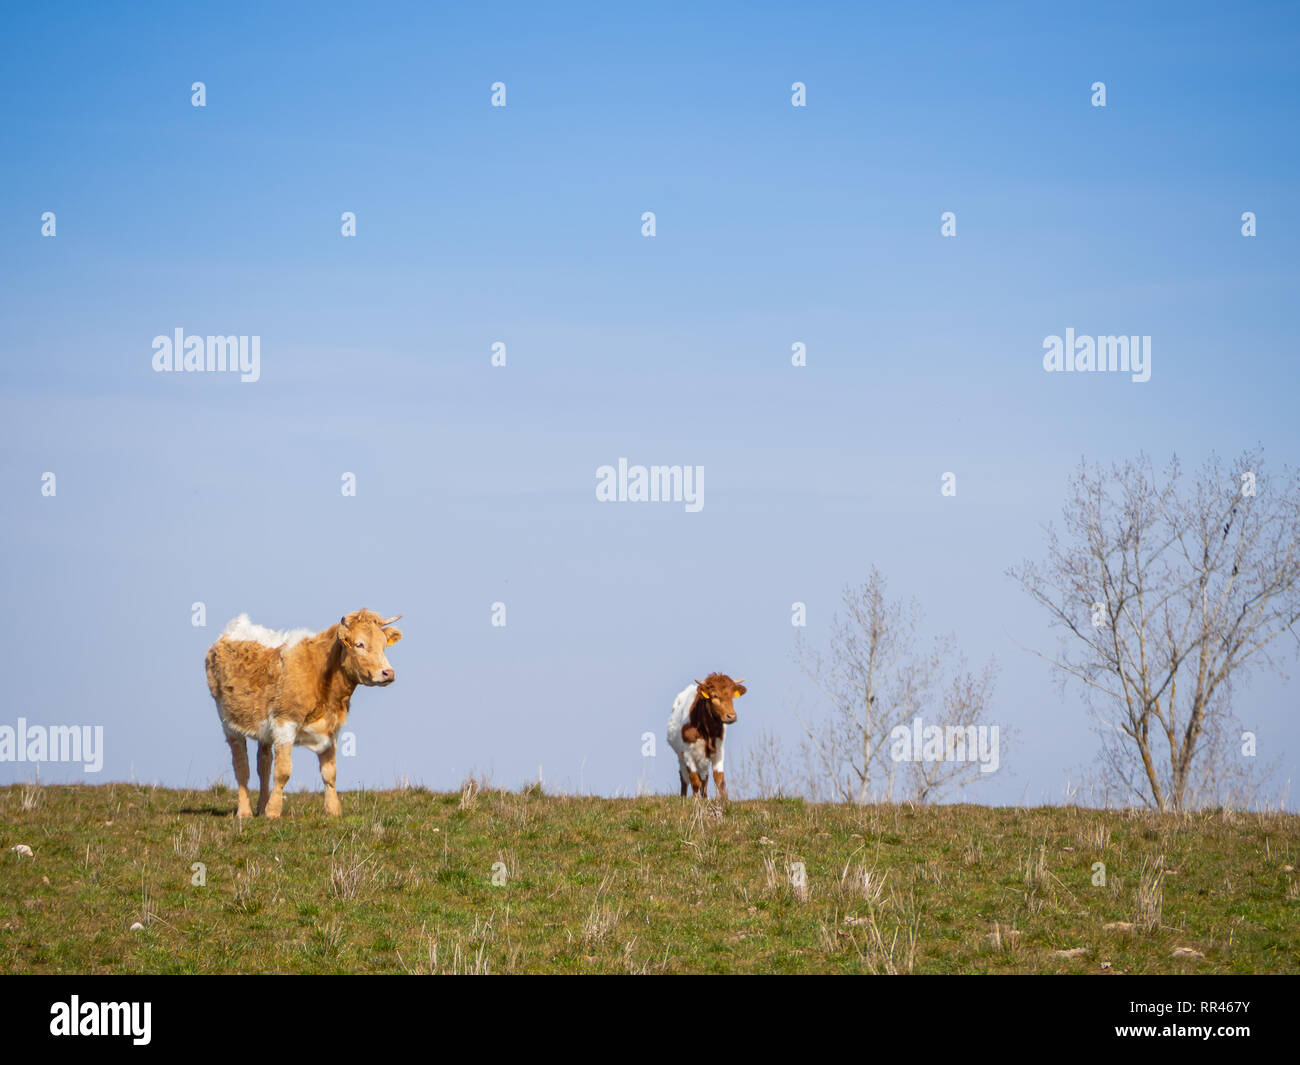 Eine Herde von Berrenda en Colorado Rasse grasende Kühe auf der Wiese in Salamanca (Spanien). Ökologische extensive Viehhaltung Konzept. Stockfoto